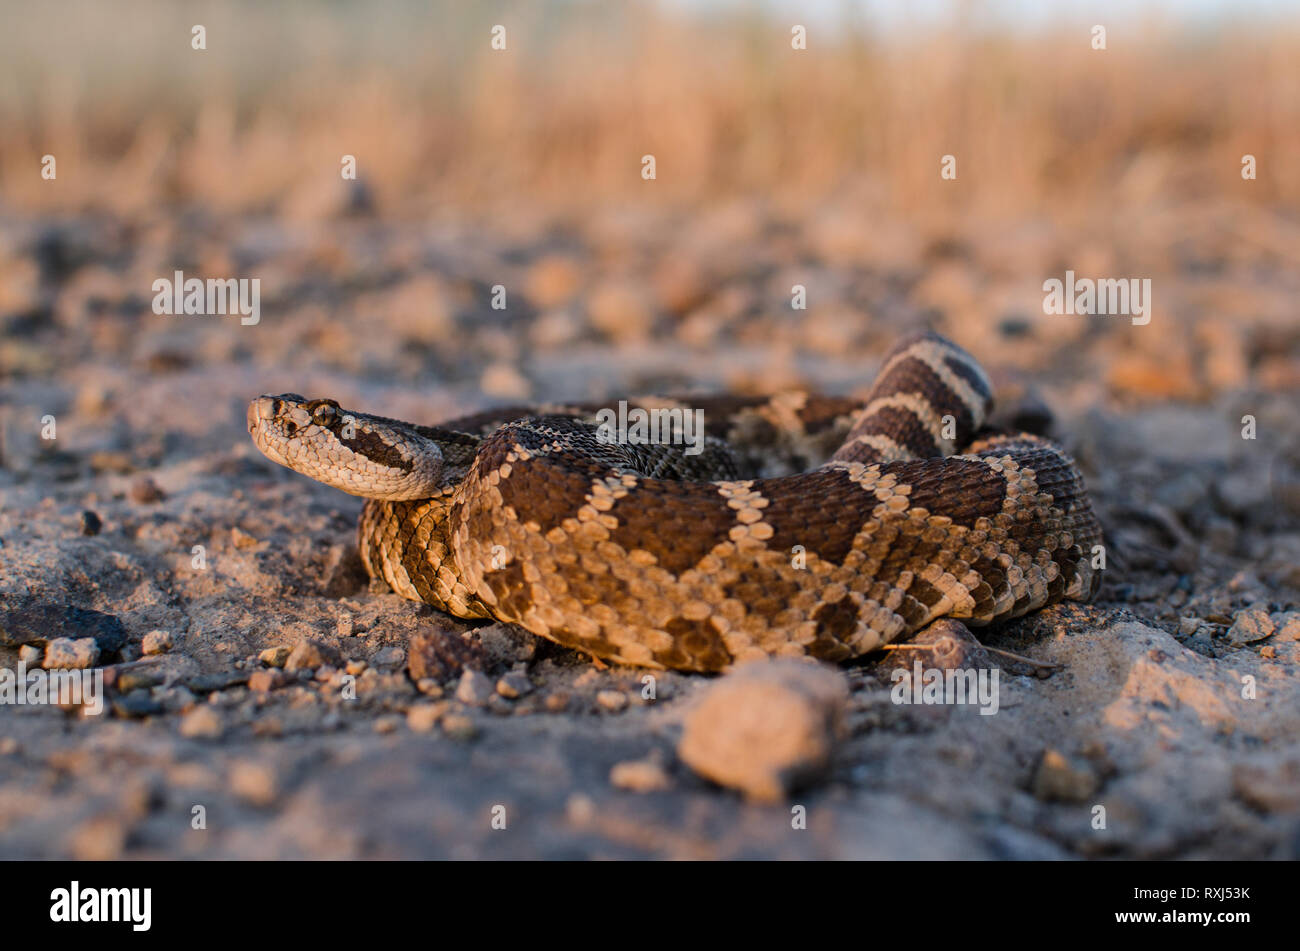 Un Pacifico settentrionale rattlesnake pone delicatamente in una serata estiva, monitoraggio del fotografo accanto a lei. Foto Stock